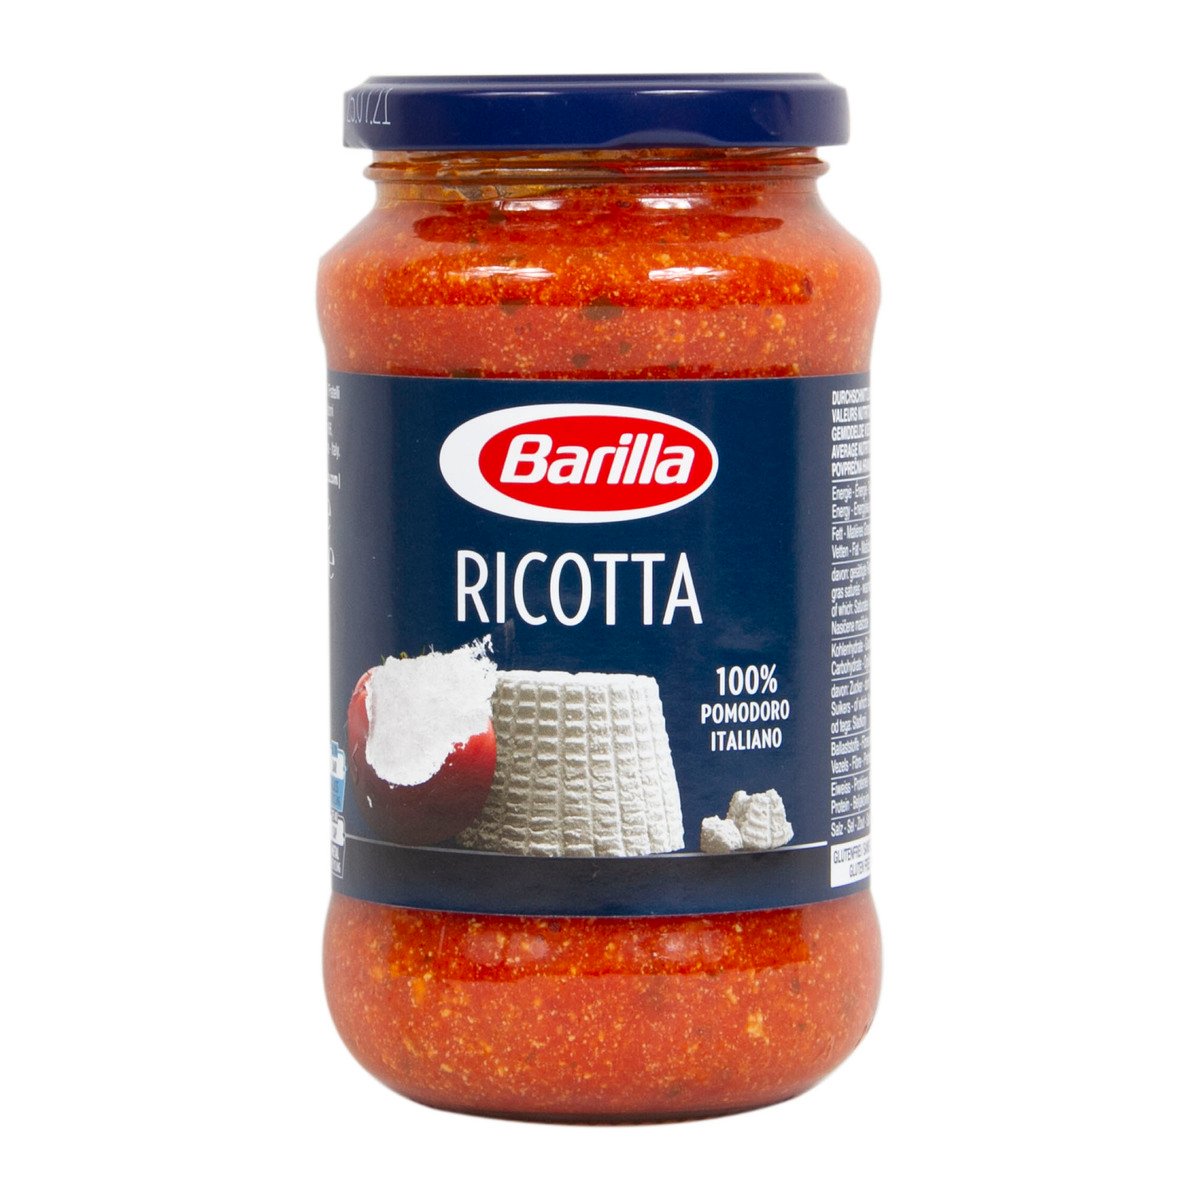 Barilla Ricotta Sauce 400 g